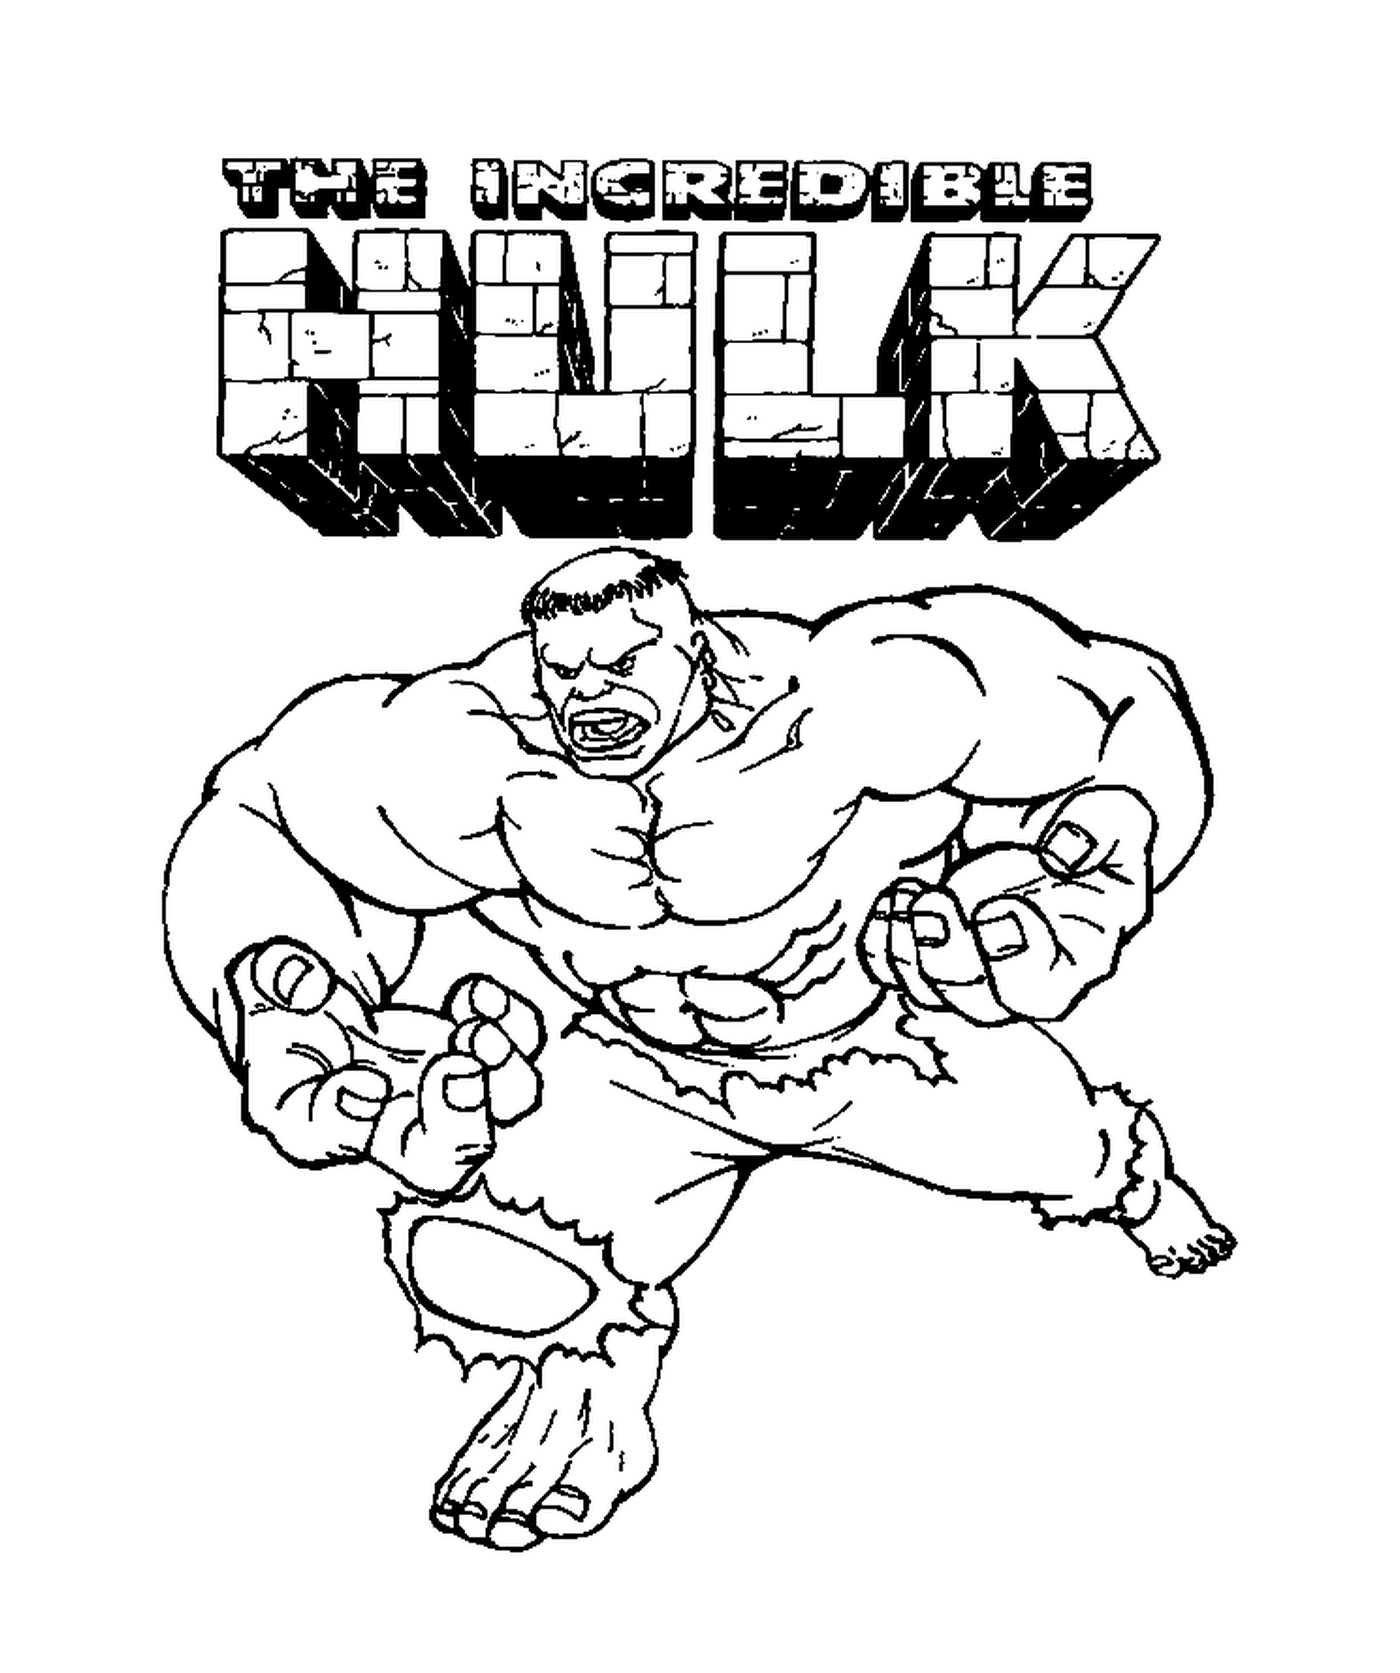  L'incredibile Hulk, personaggio dei cartoni animati 